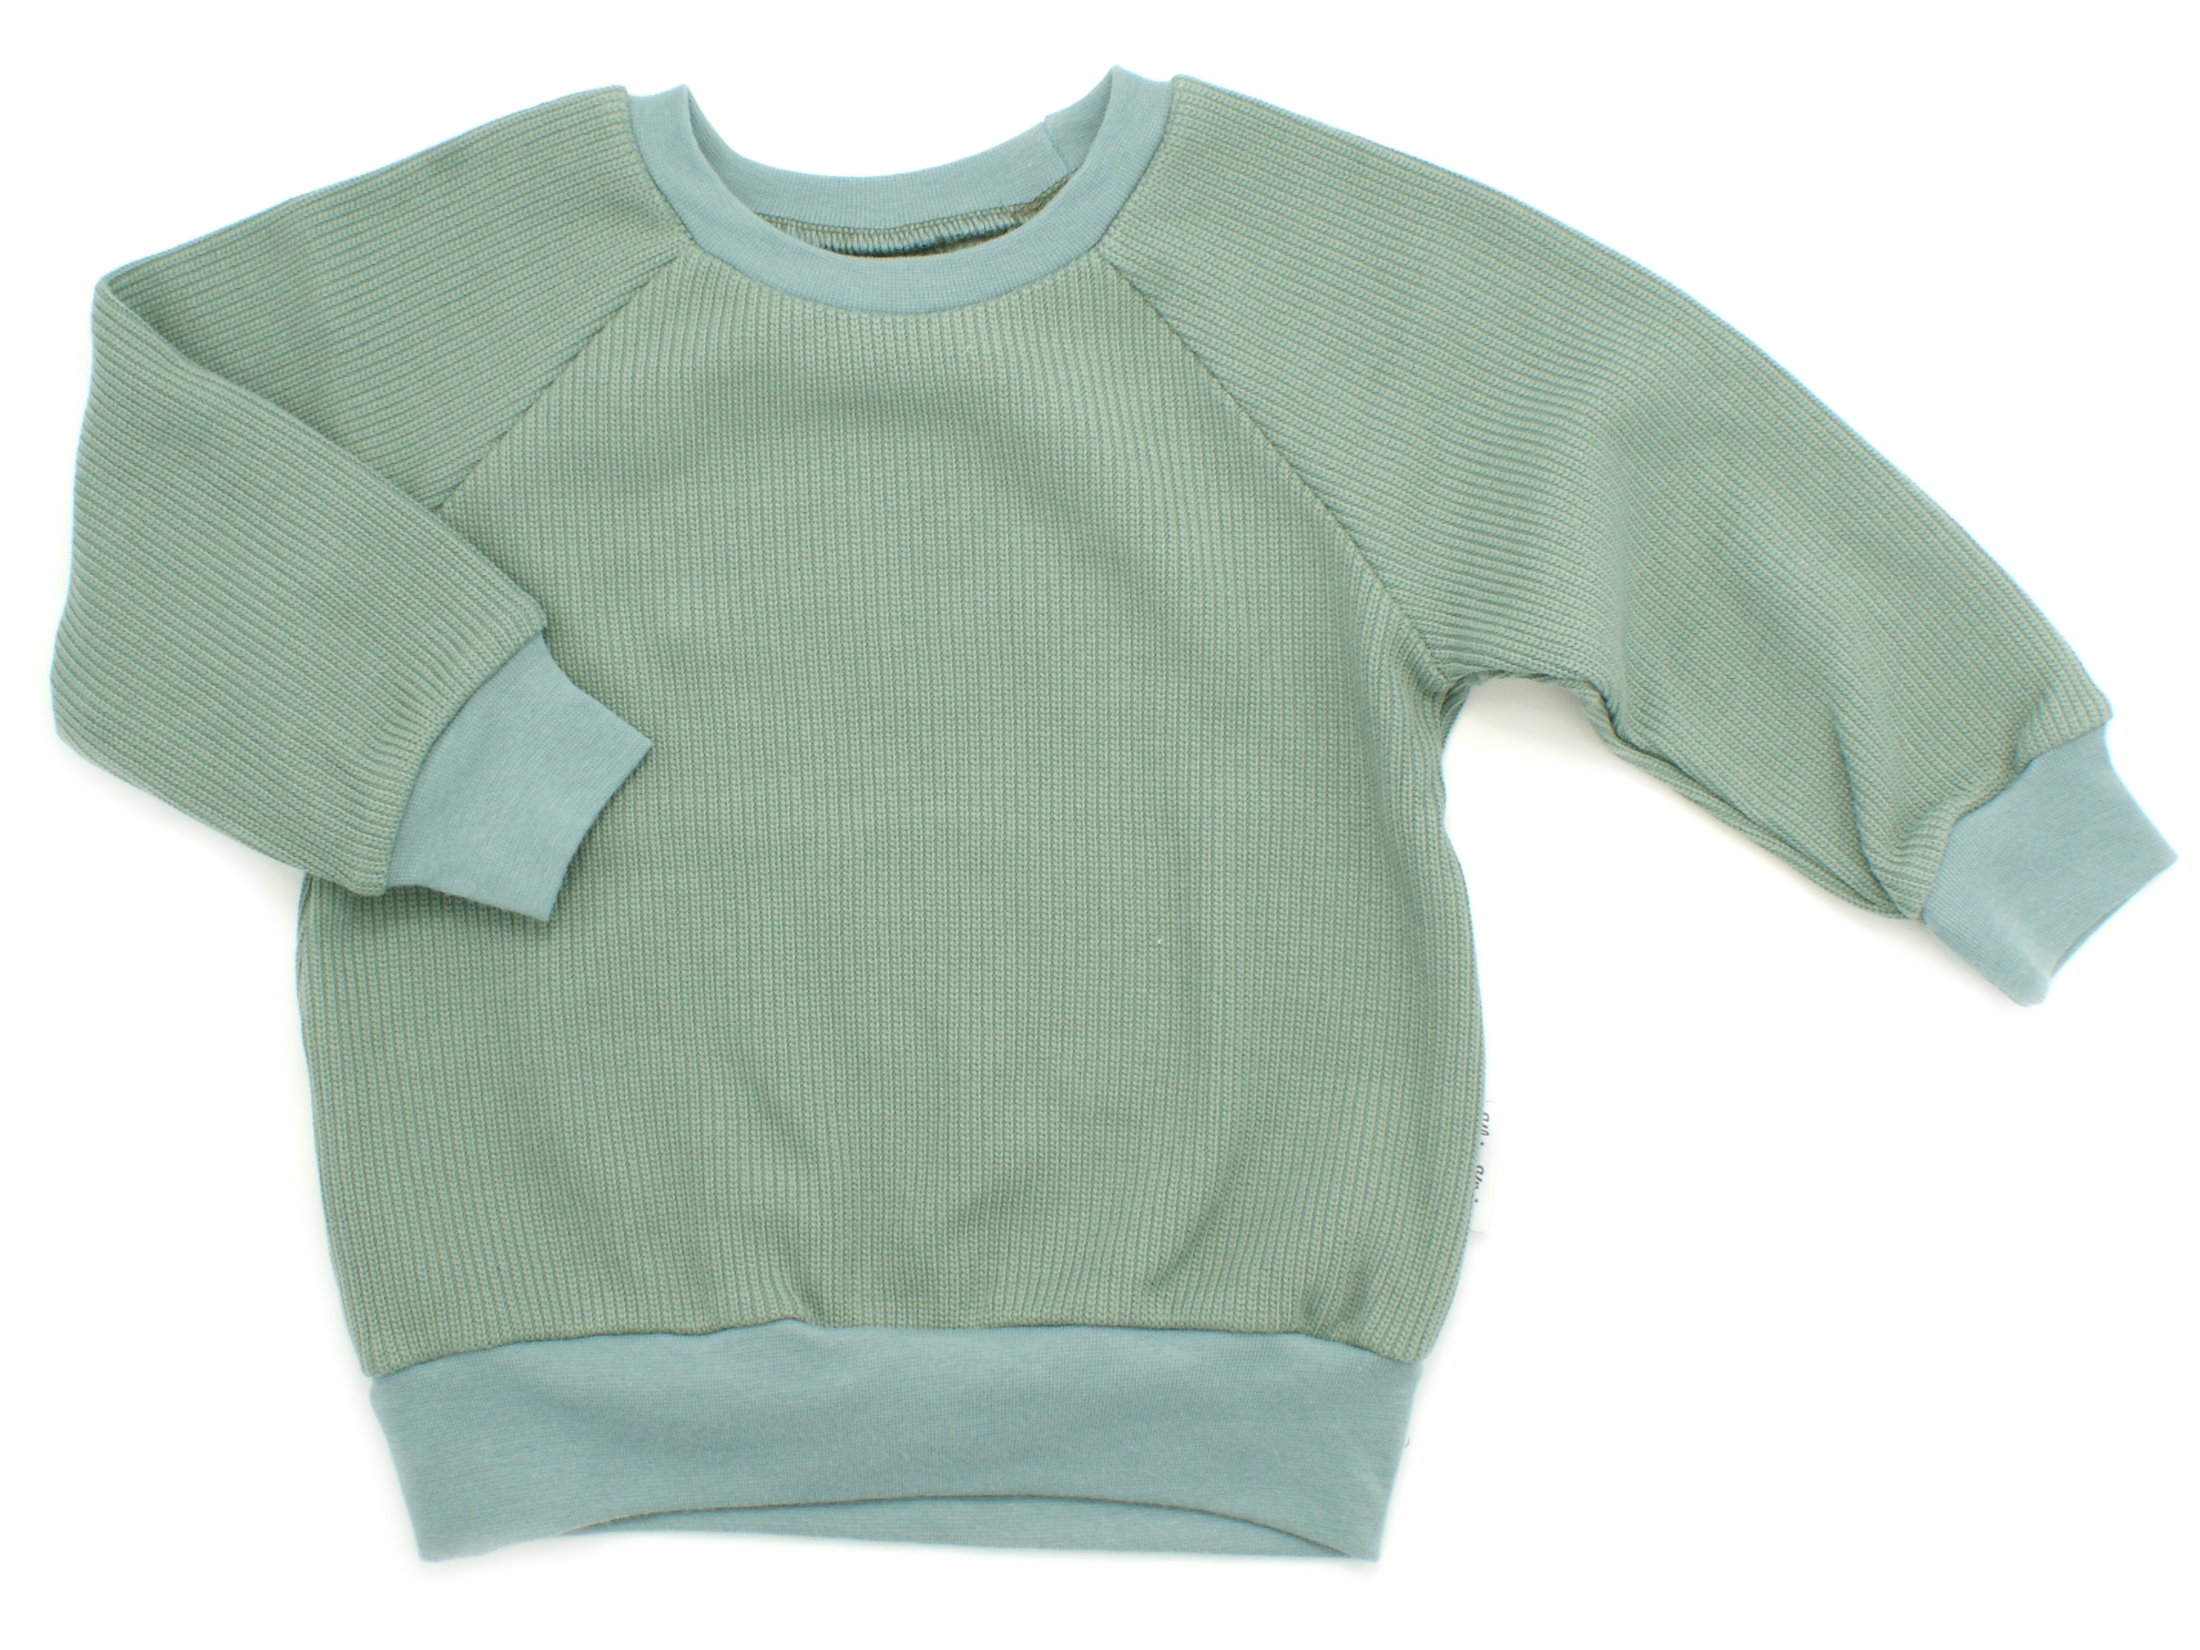 Kinder Pullover Shirt Strick Uni mint